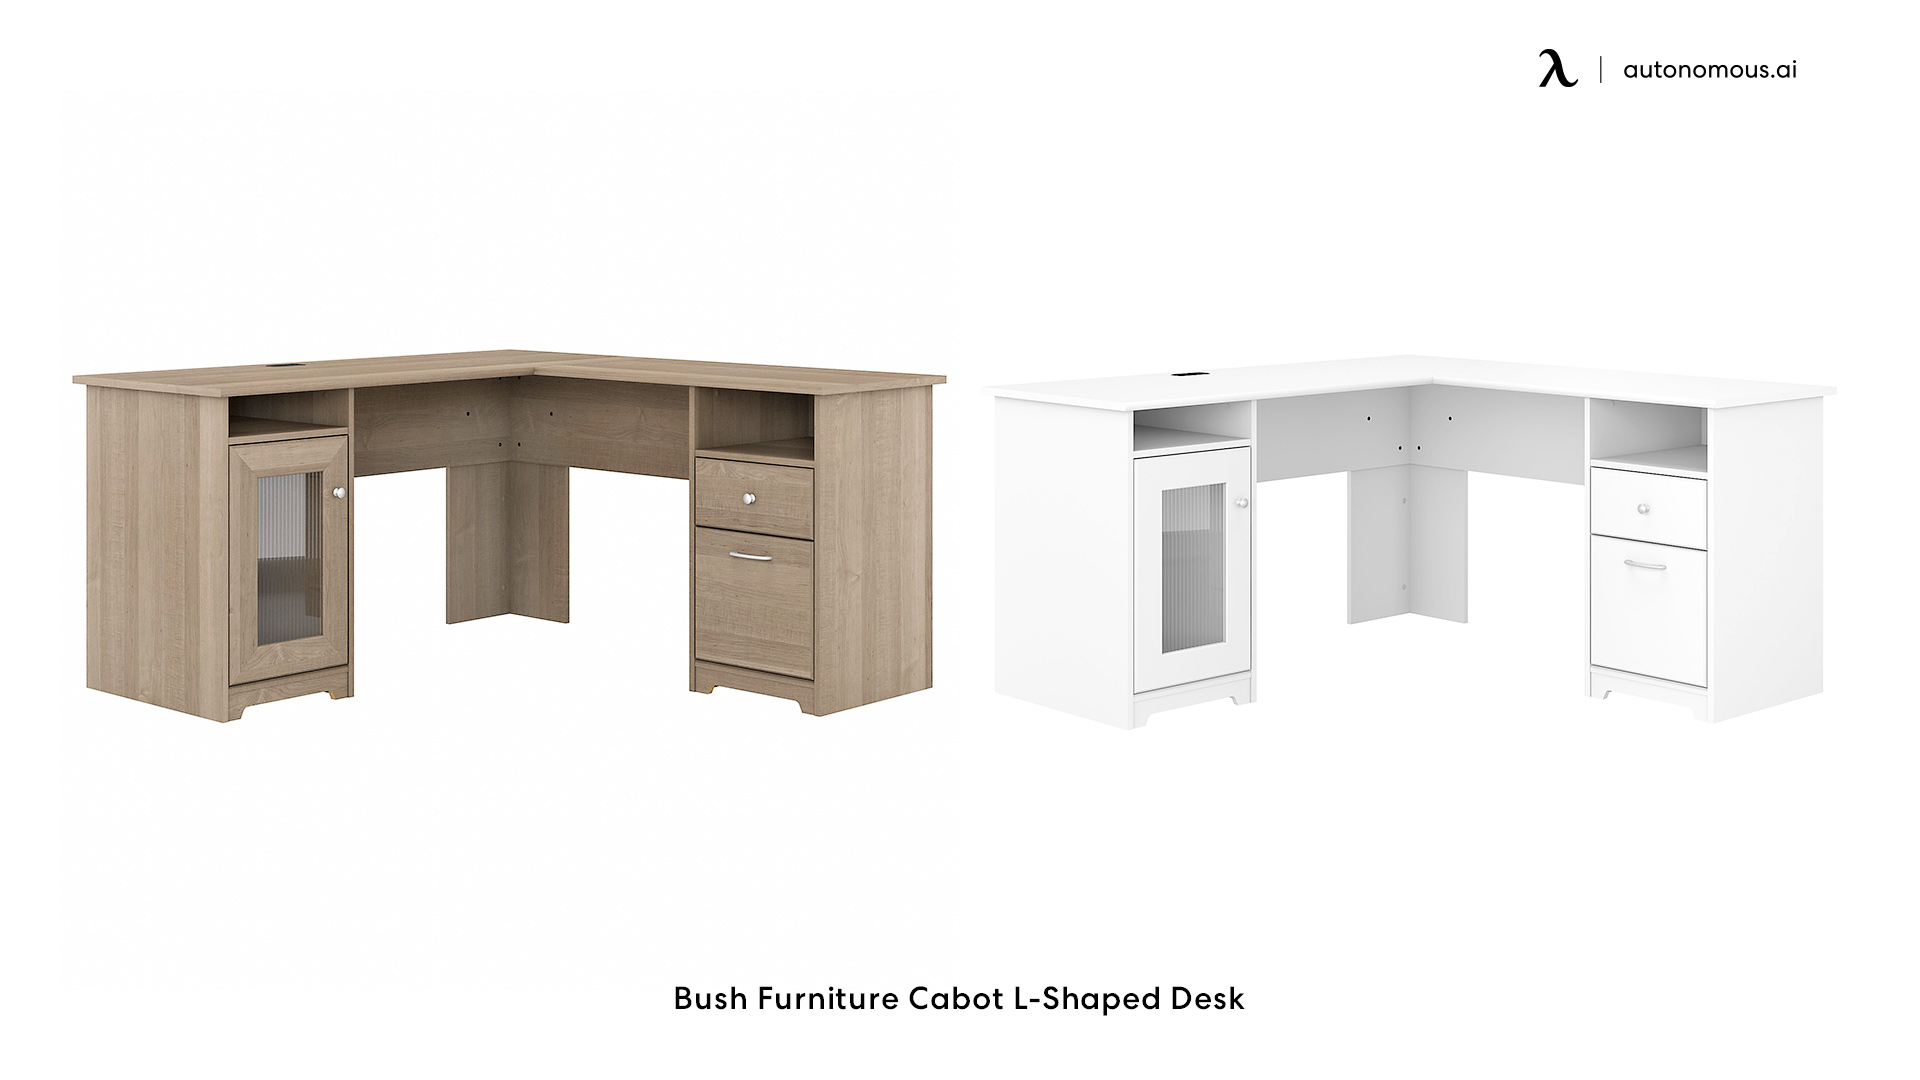 Cabot Corner Desk from Bush Furniture